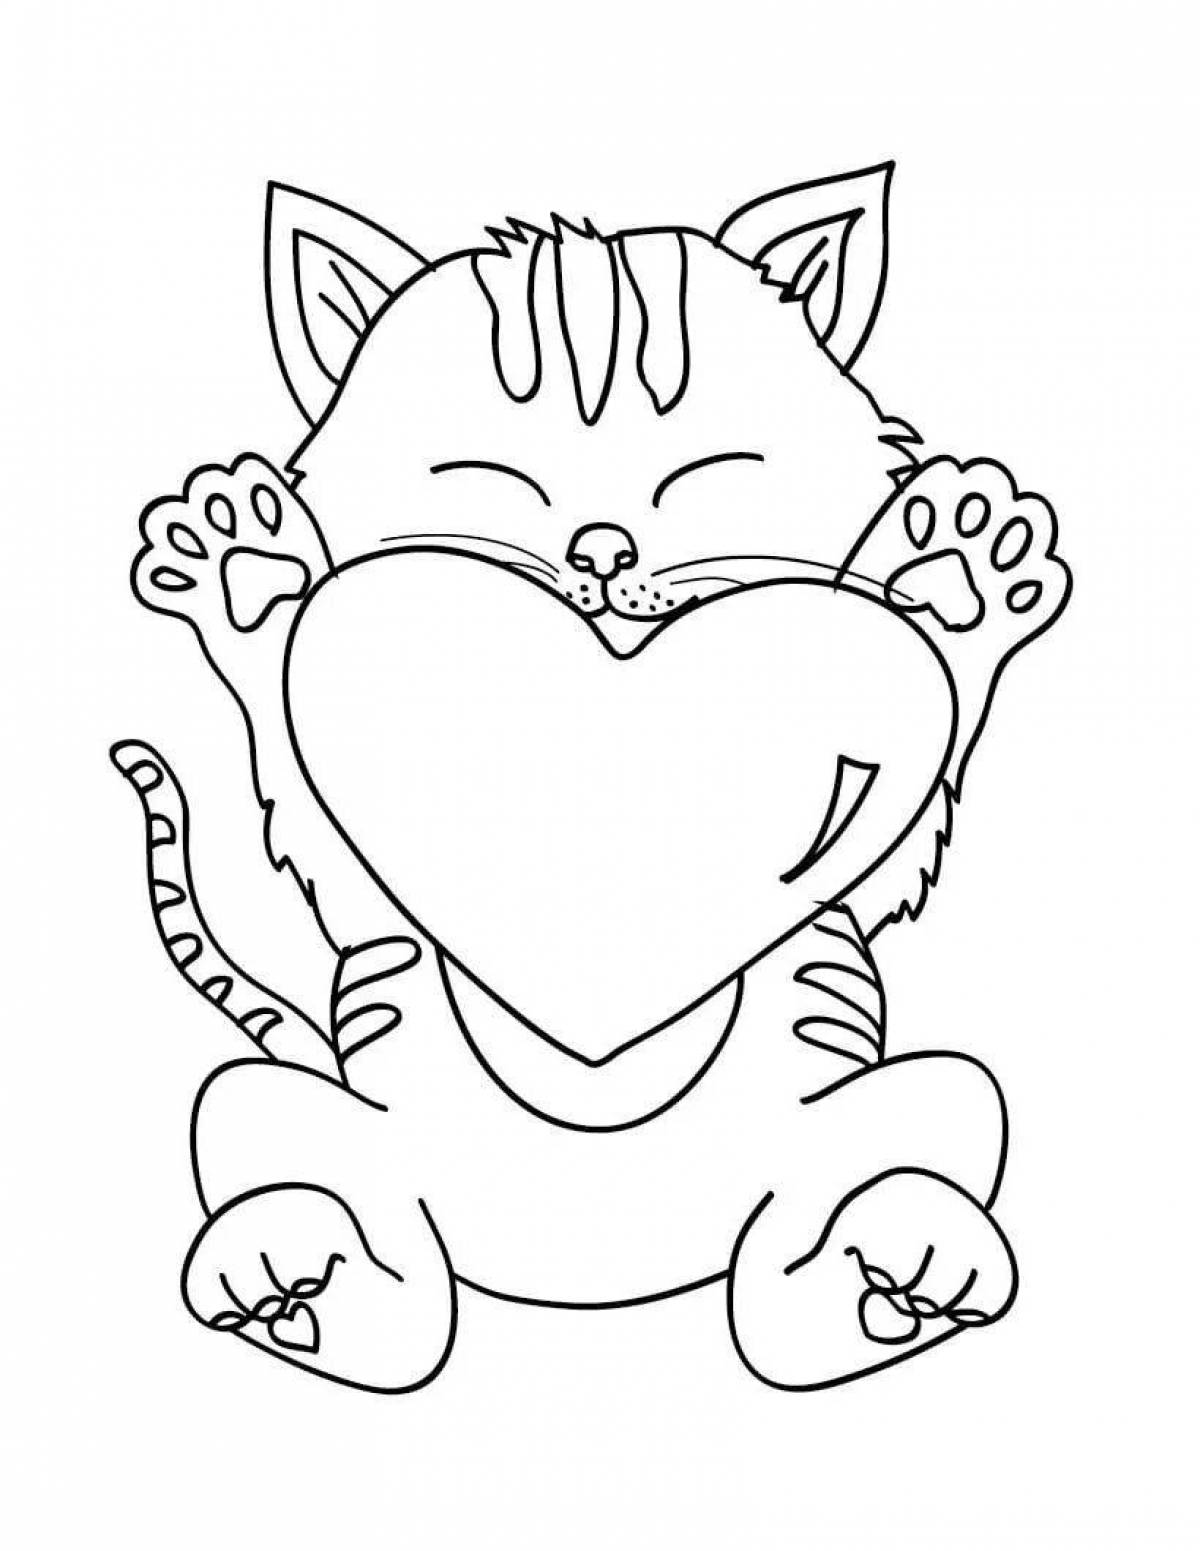 Раскраска благородный кот с сердечком